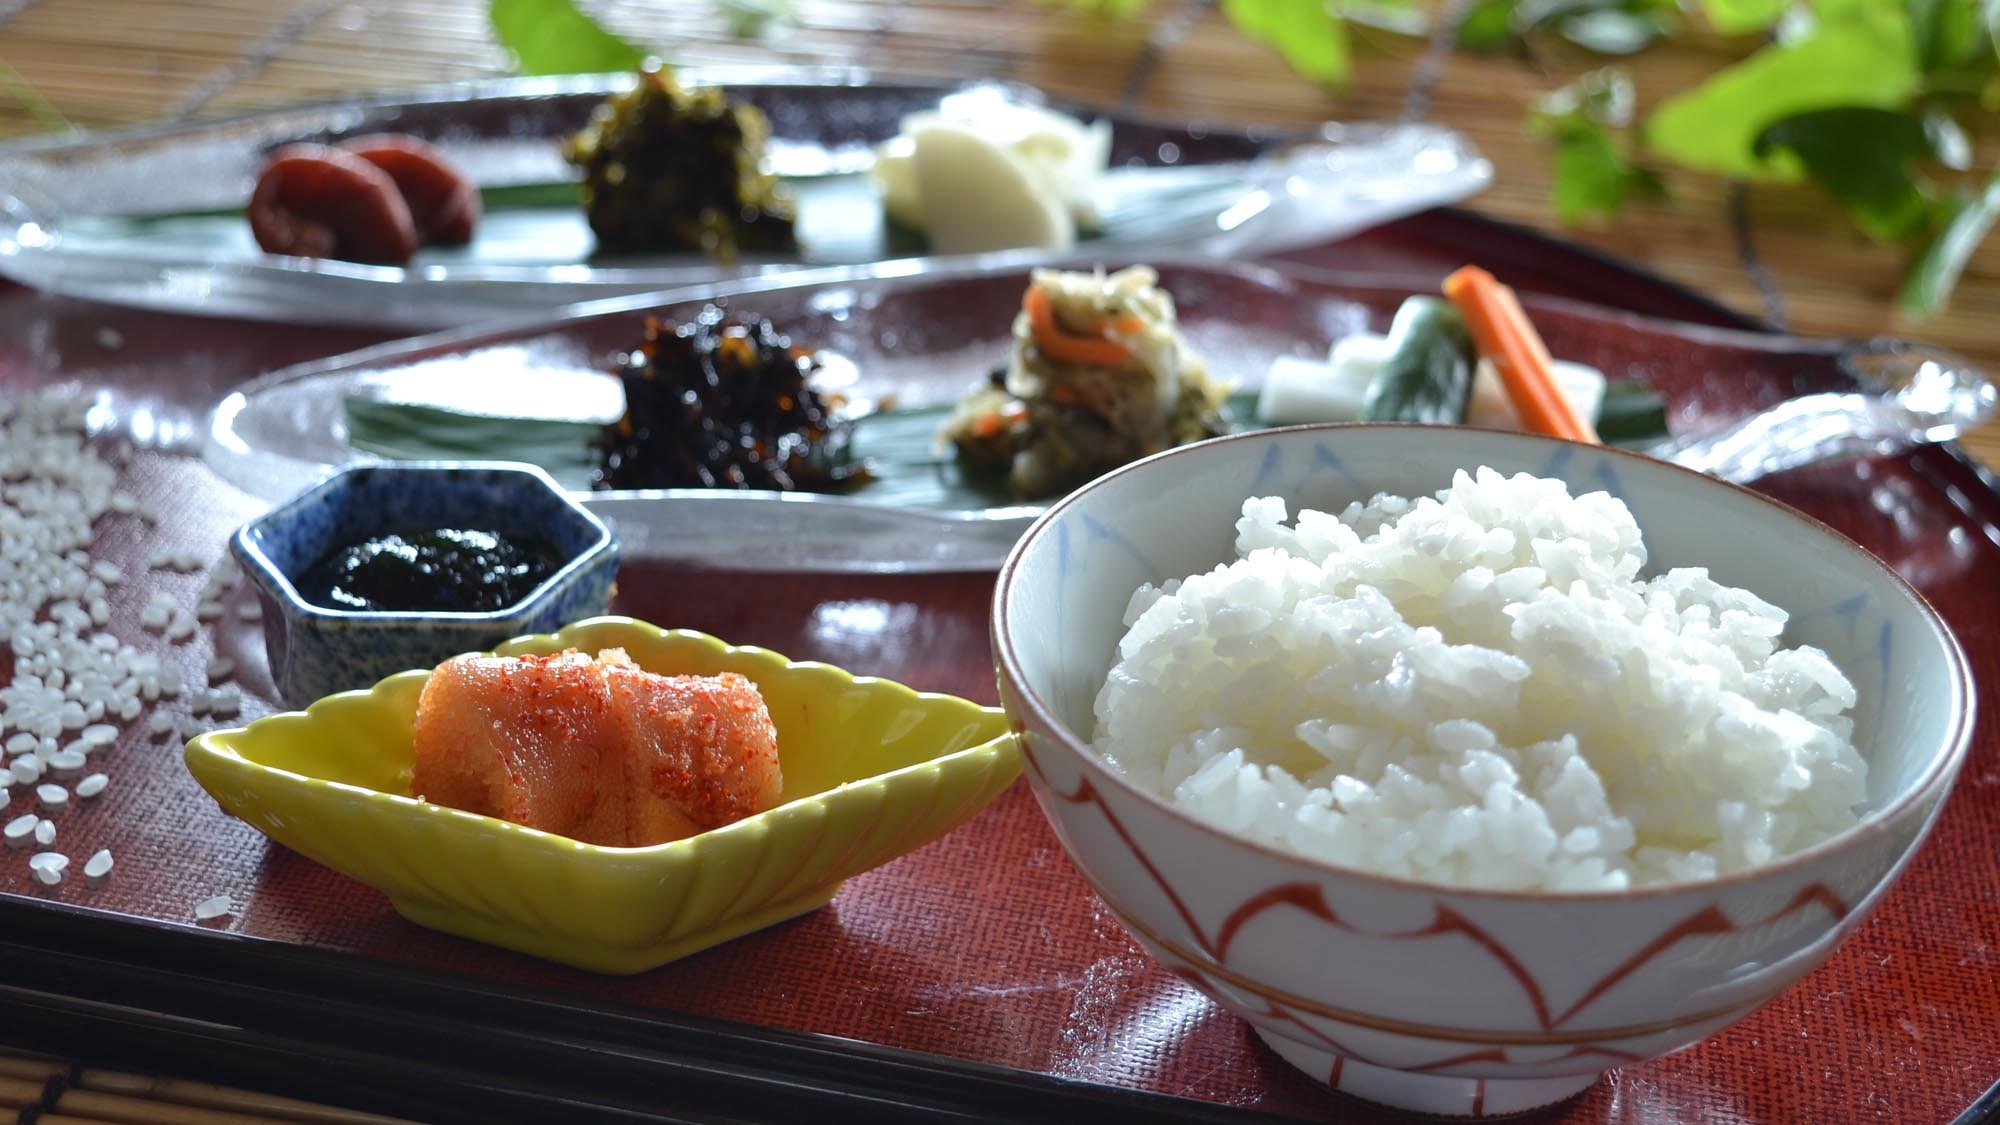 ◆早餐白米飯（圖片）：新鮮煮熟的白米飯和配飯。